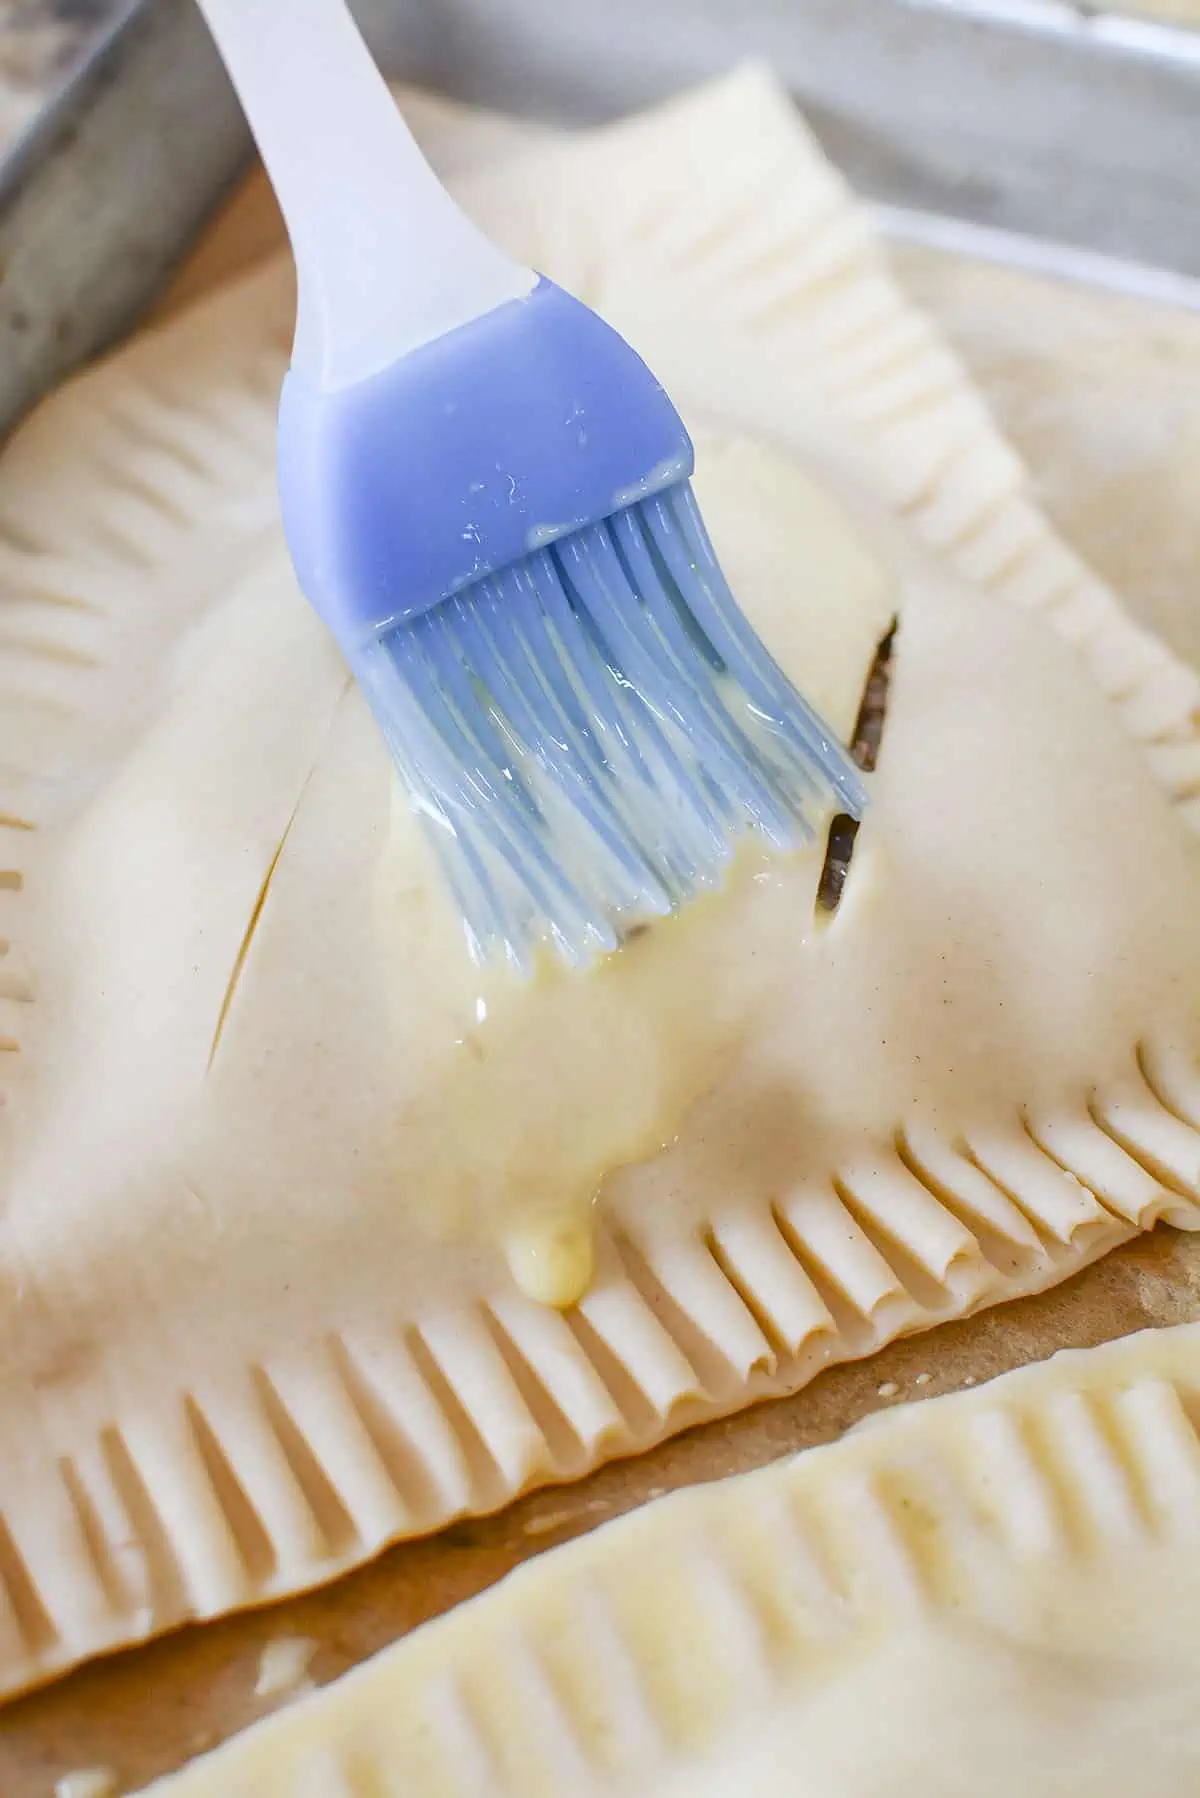 A blue silicone brush brushing on the egg wash.